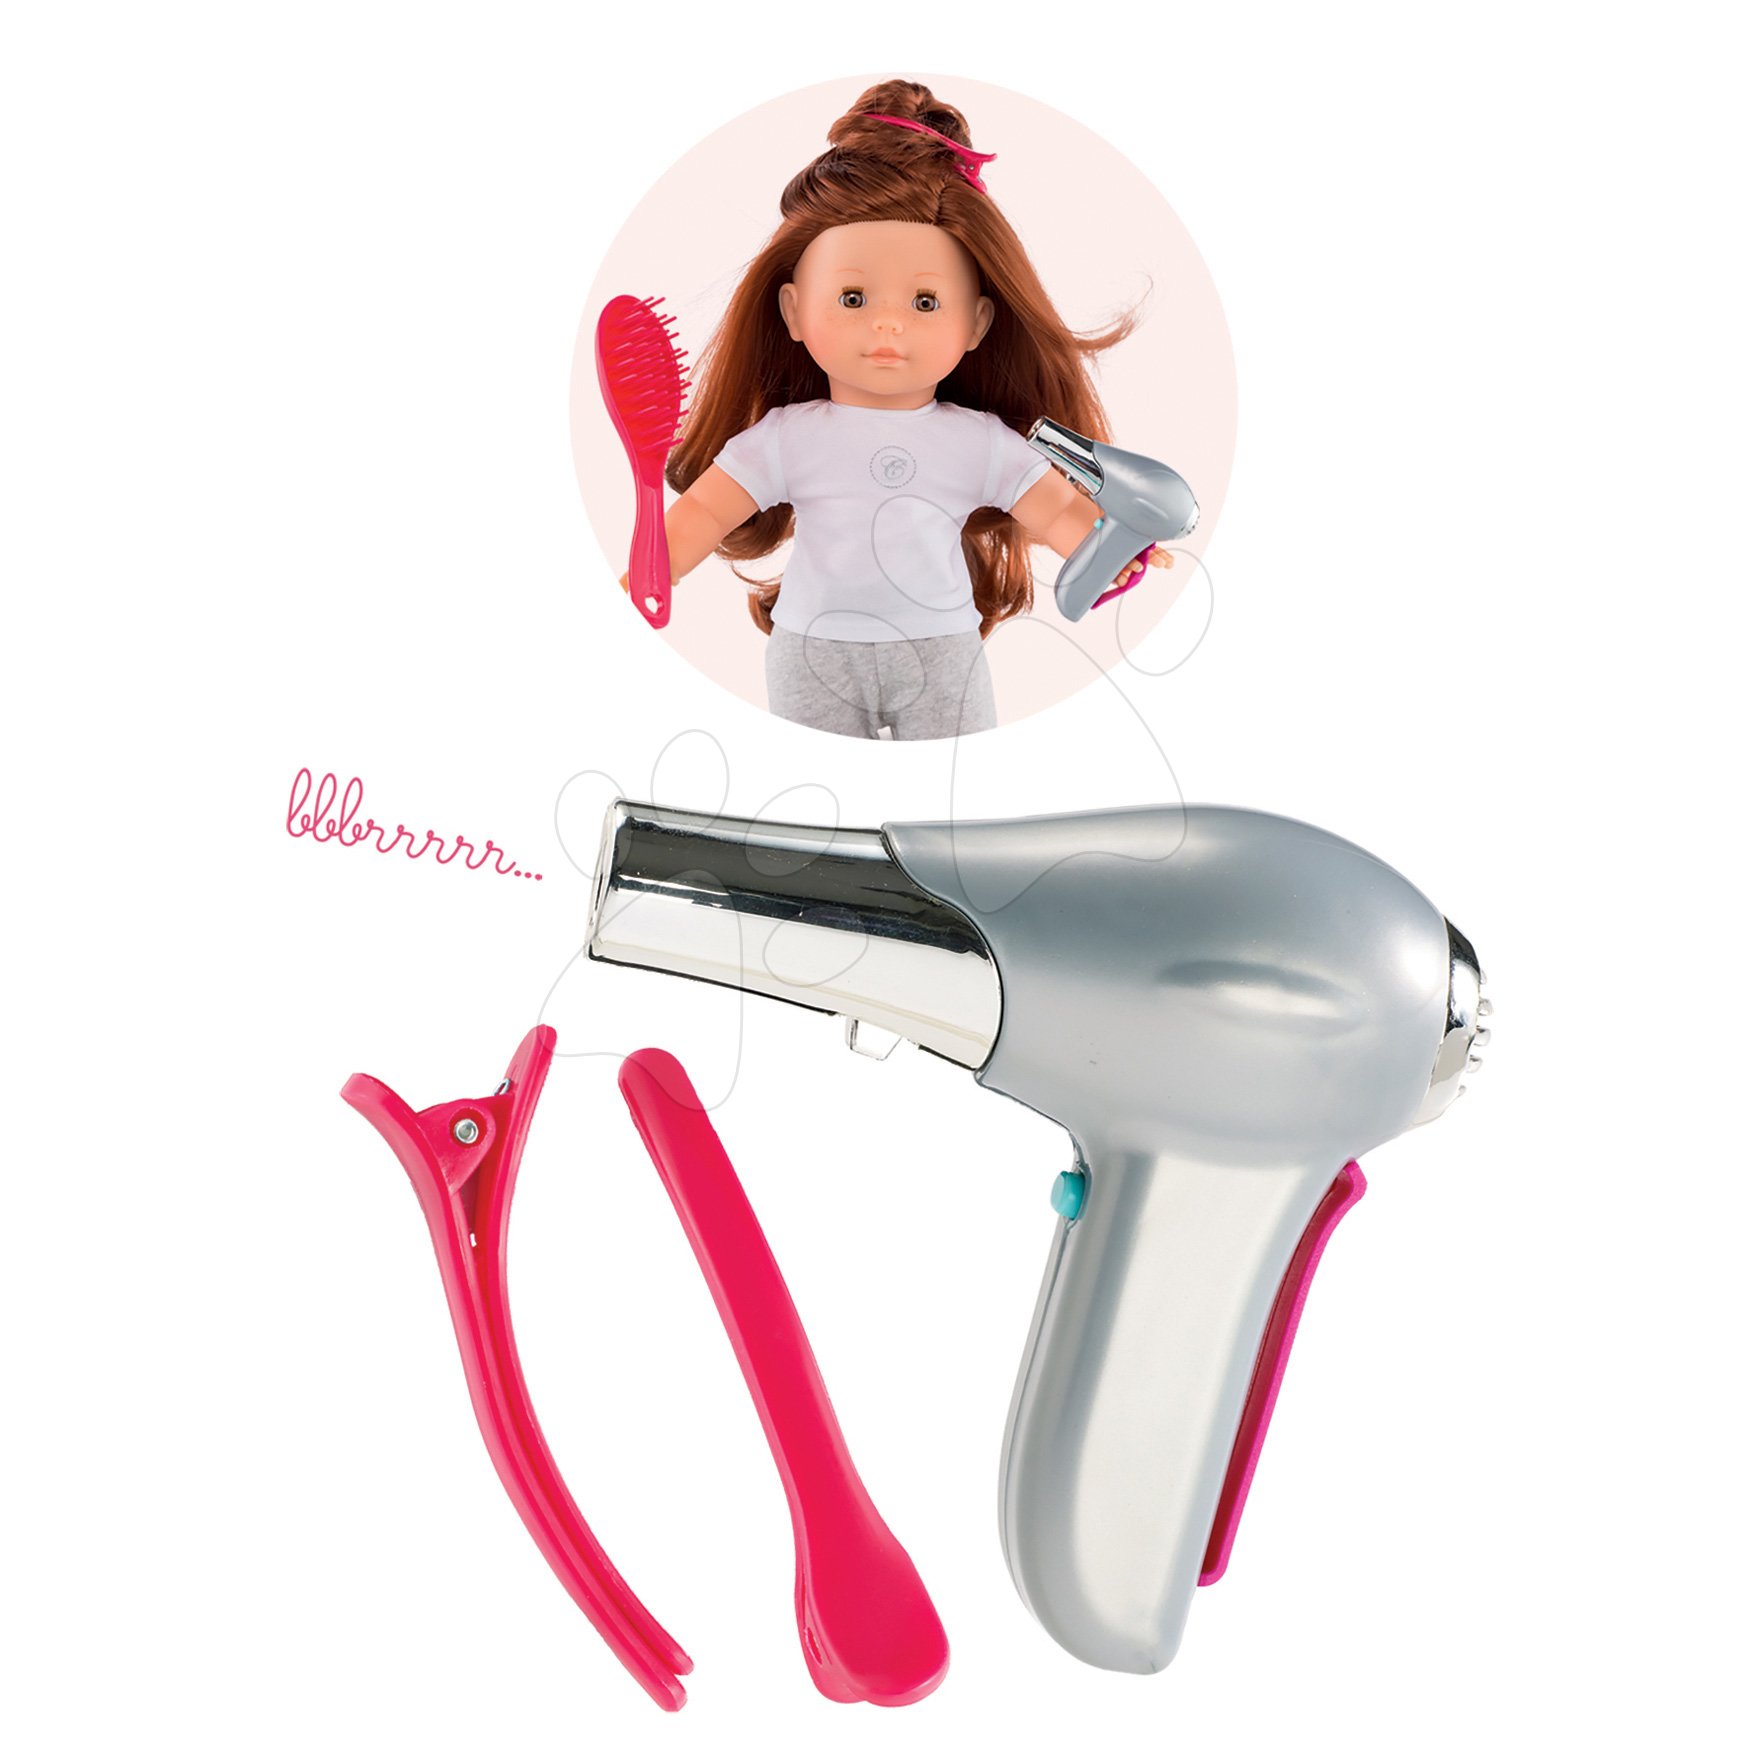 E-shop Sušička na vlasy so sponami Blow Dry Ma Corolle pre 36 cm bábiku od 4 rokov